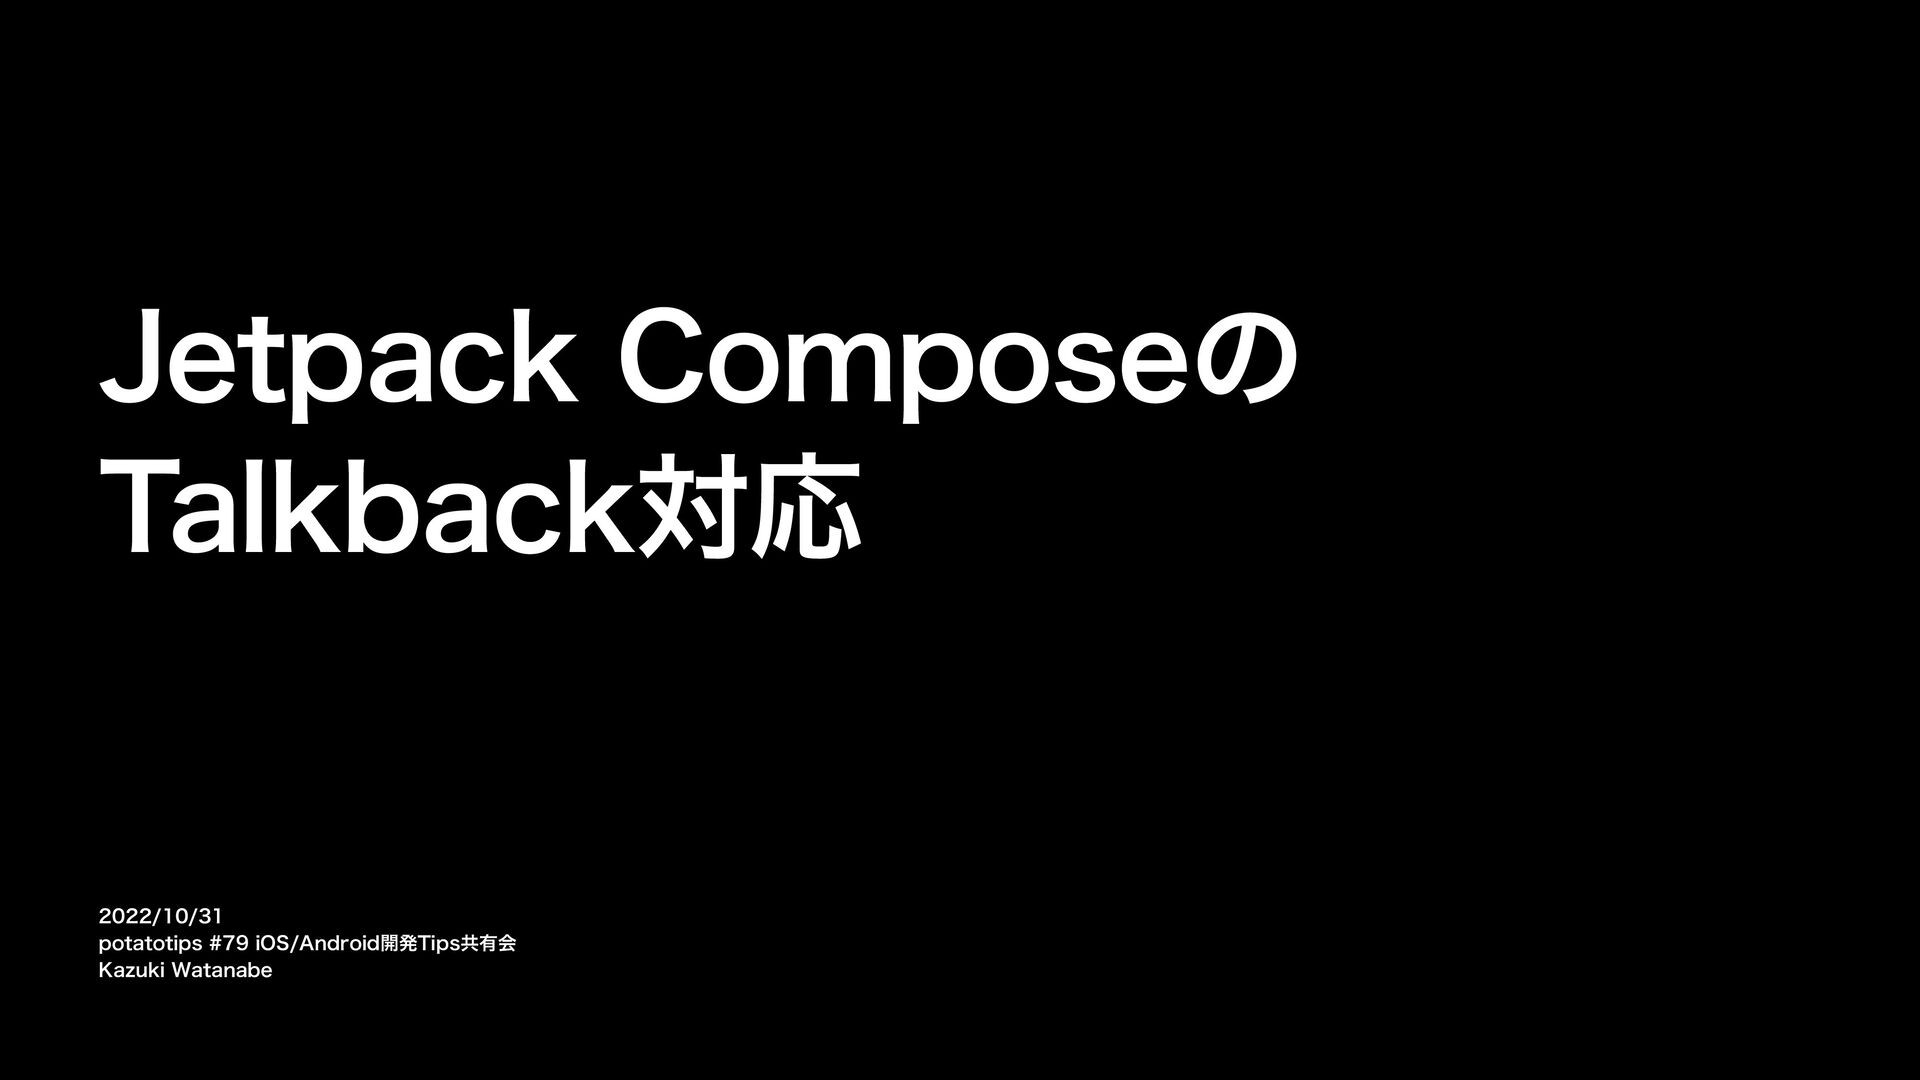 Jetpack ComposeのTalkback対応